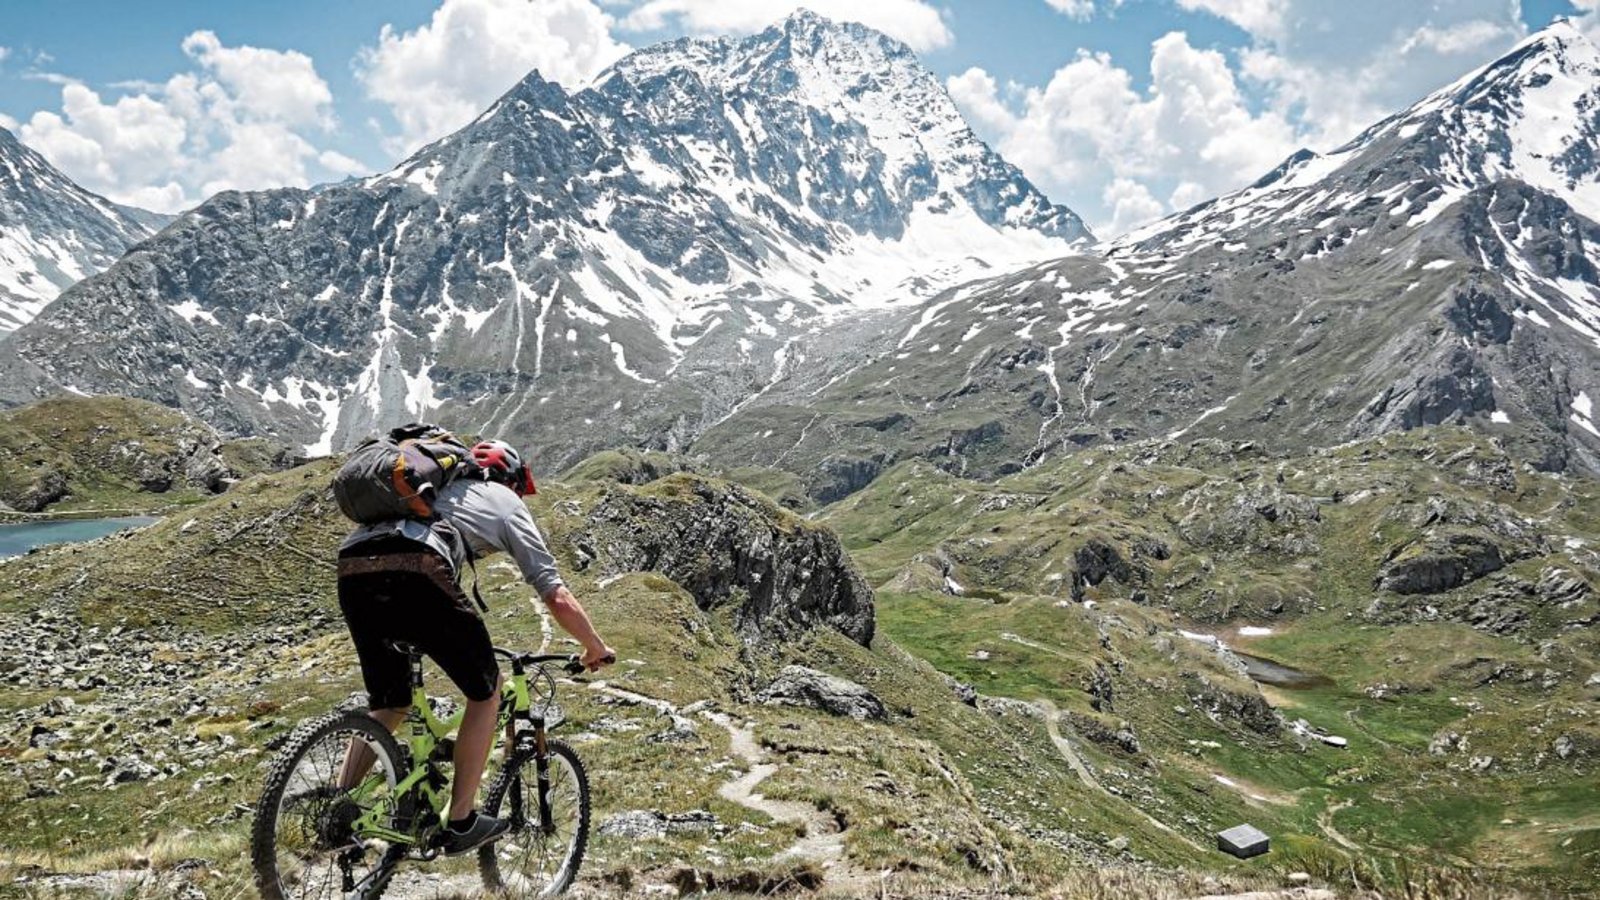 Mit dem Rad ist Ferry Weikert derzeit vor allem in den Schweizer Alpen unterwegs. Im Herbst möchte er sein Studium im Fach „Outdoorsport & Adventuremanagement“ beginnen. Fotos: p